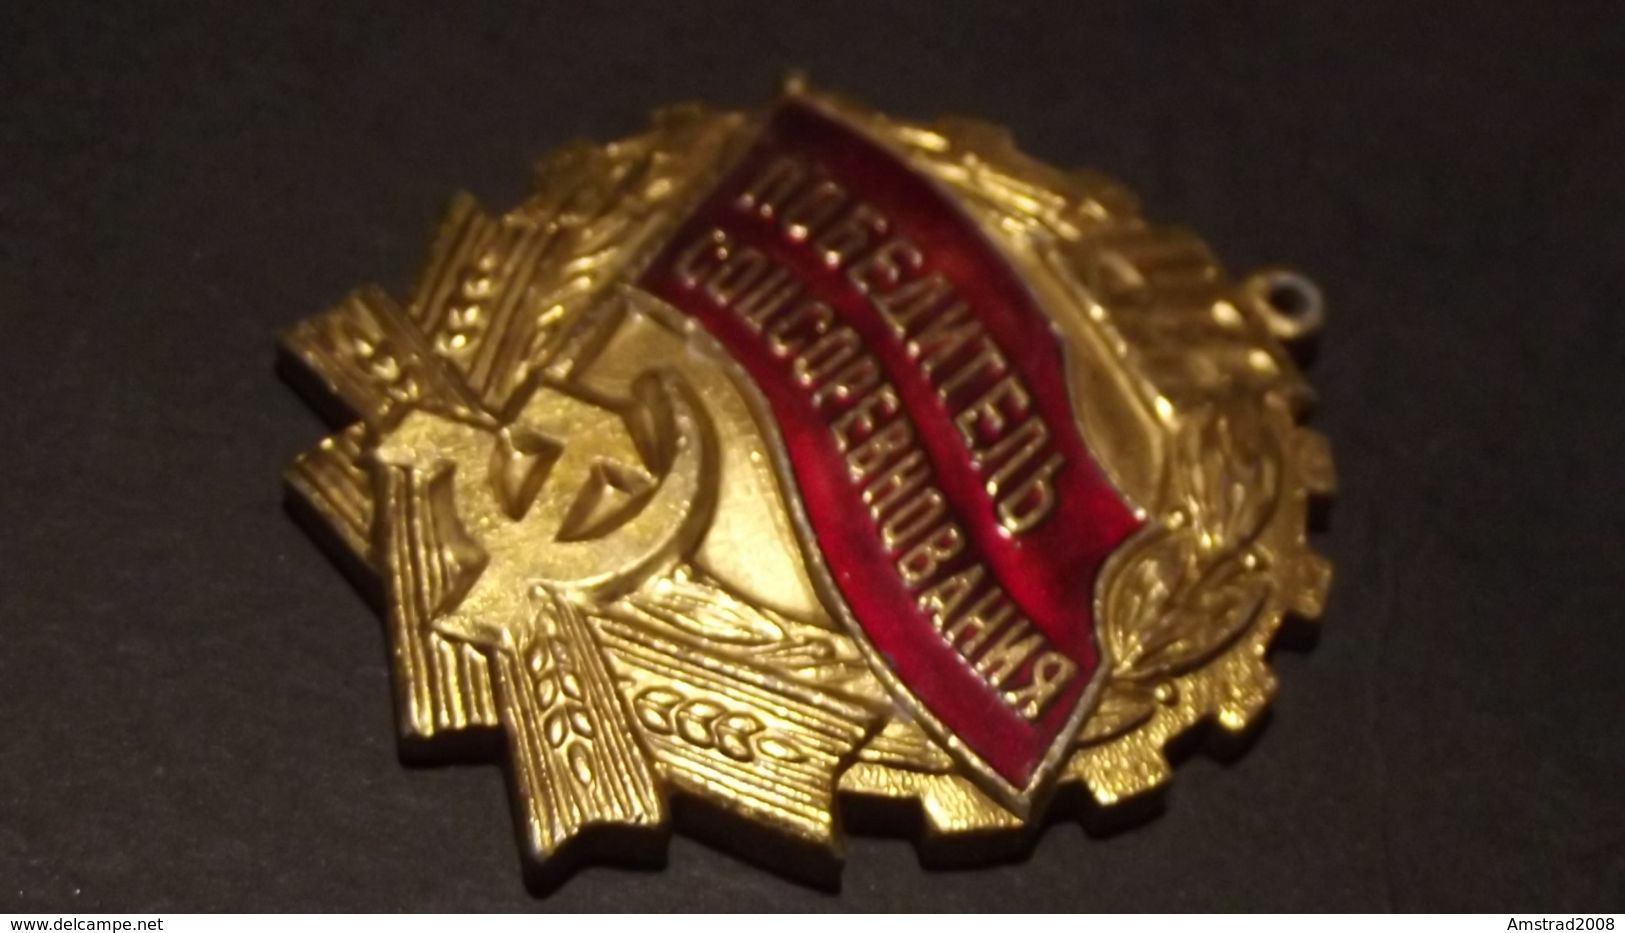 1973 URSS CCCP MEDAGLIA MILITARE RUSSA DELL'ESERCITO SOVIETICO RUSSIA  MILITARY RUSSIAN MEDAL MILITAIRE KGB LENIN HL - Russia